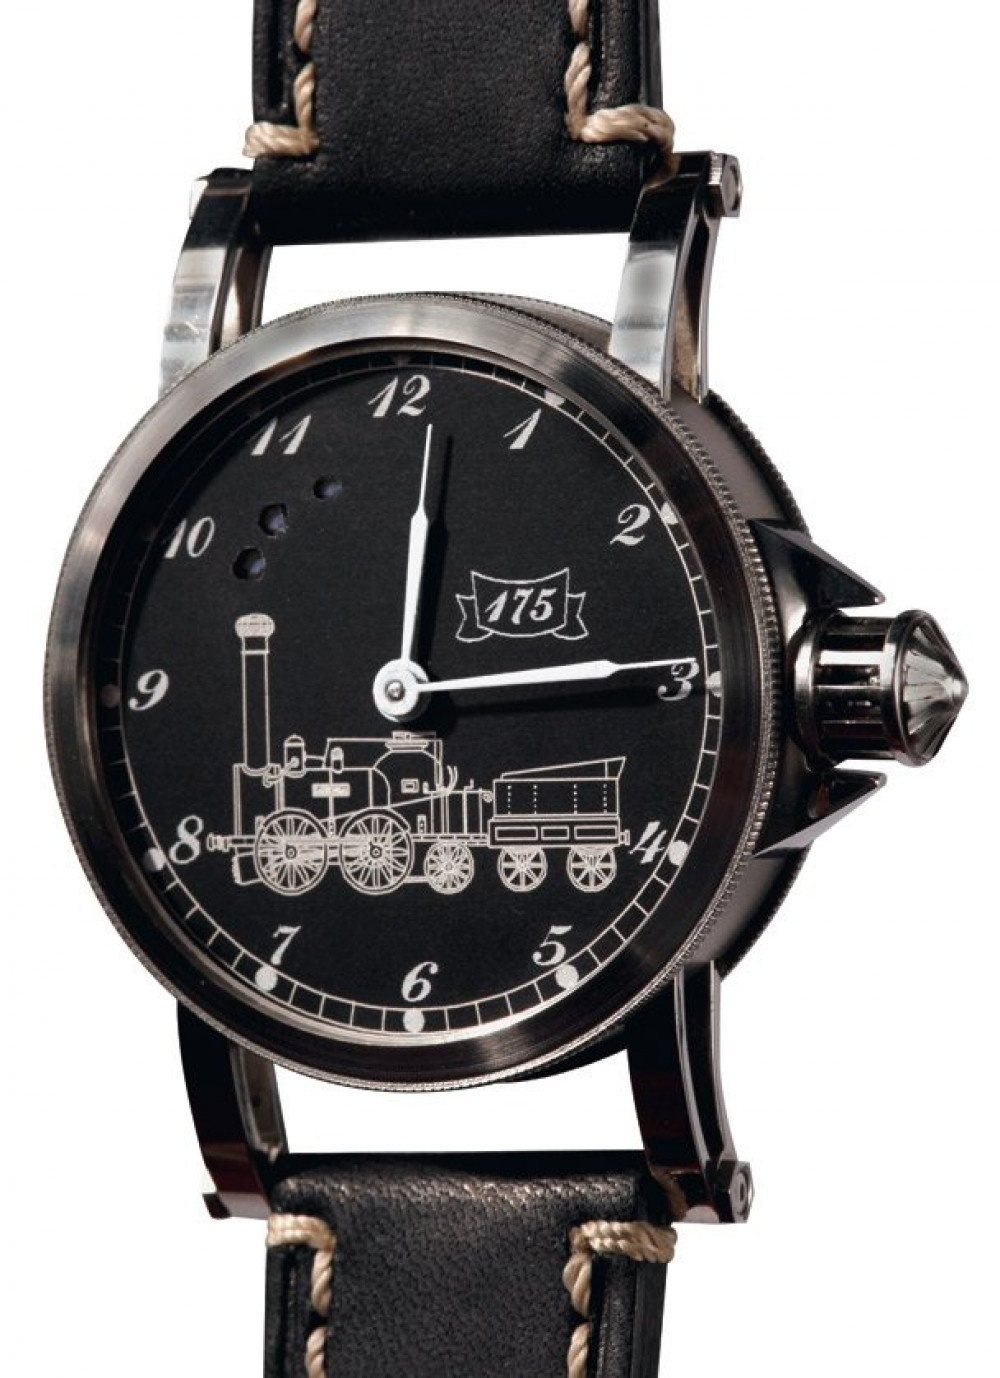 Zegarek firmy Bleitz, model Saxonia